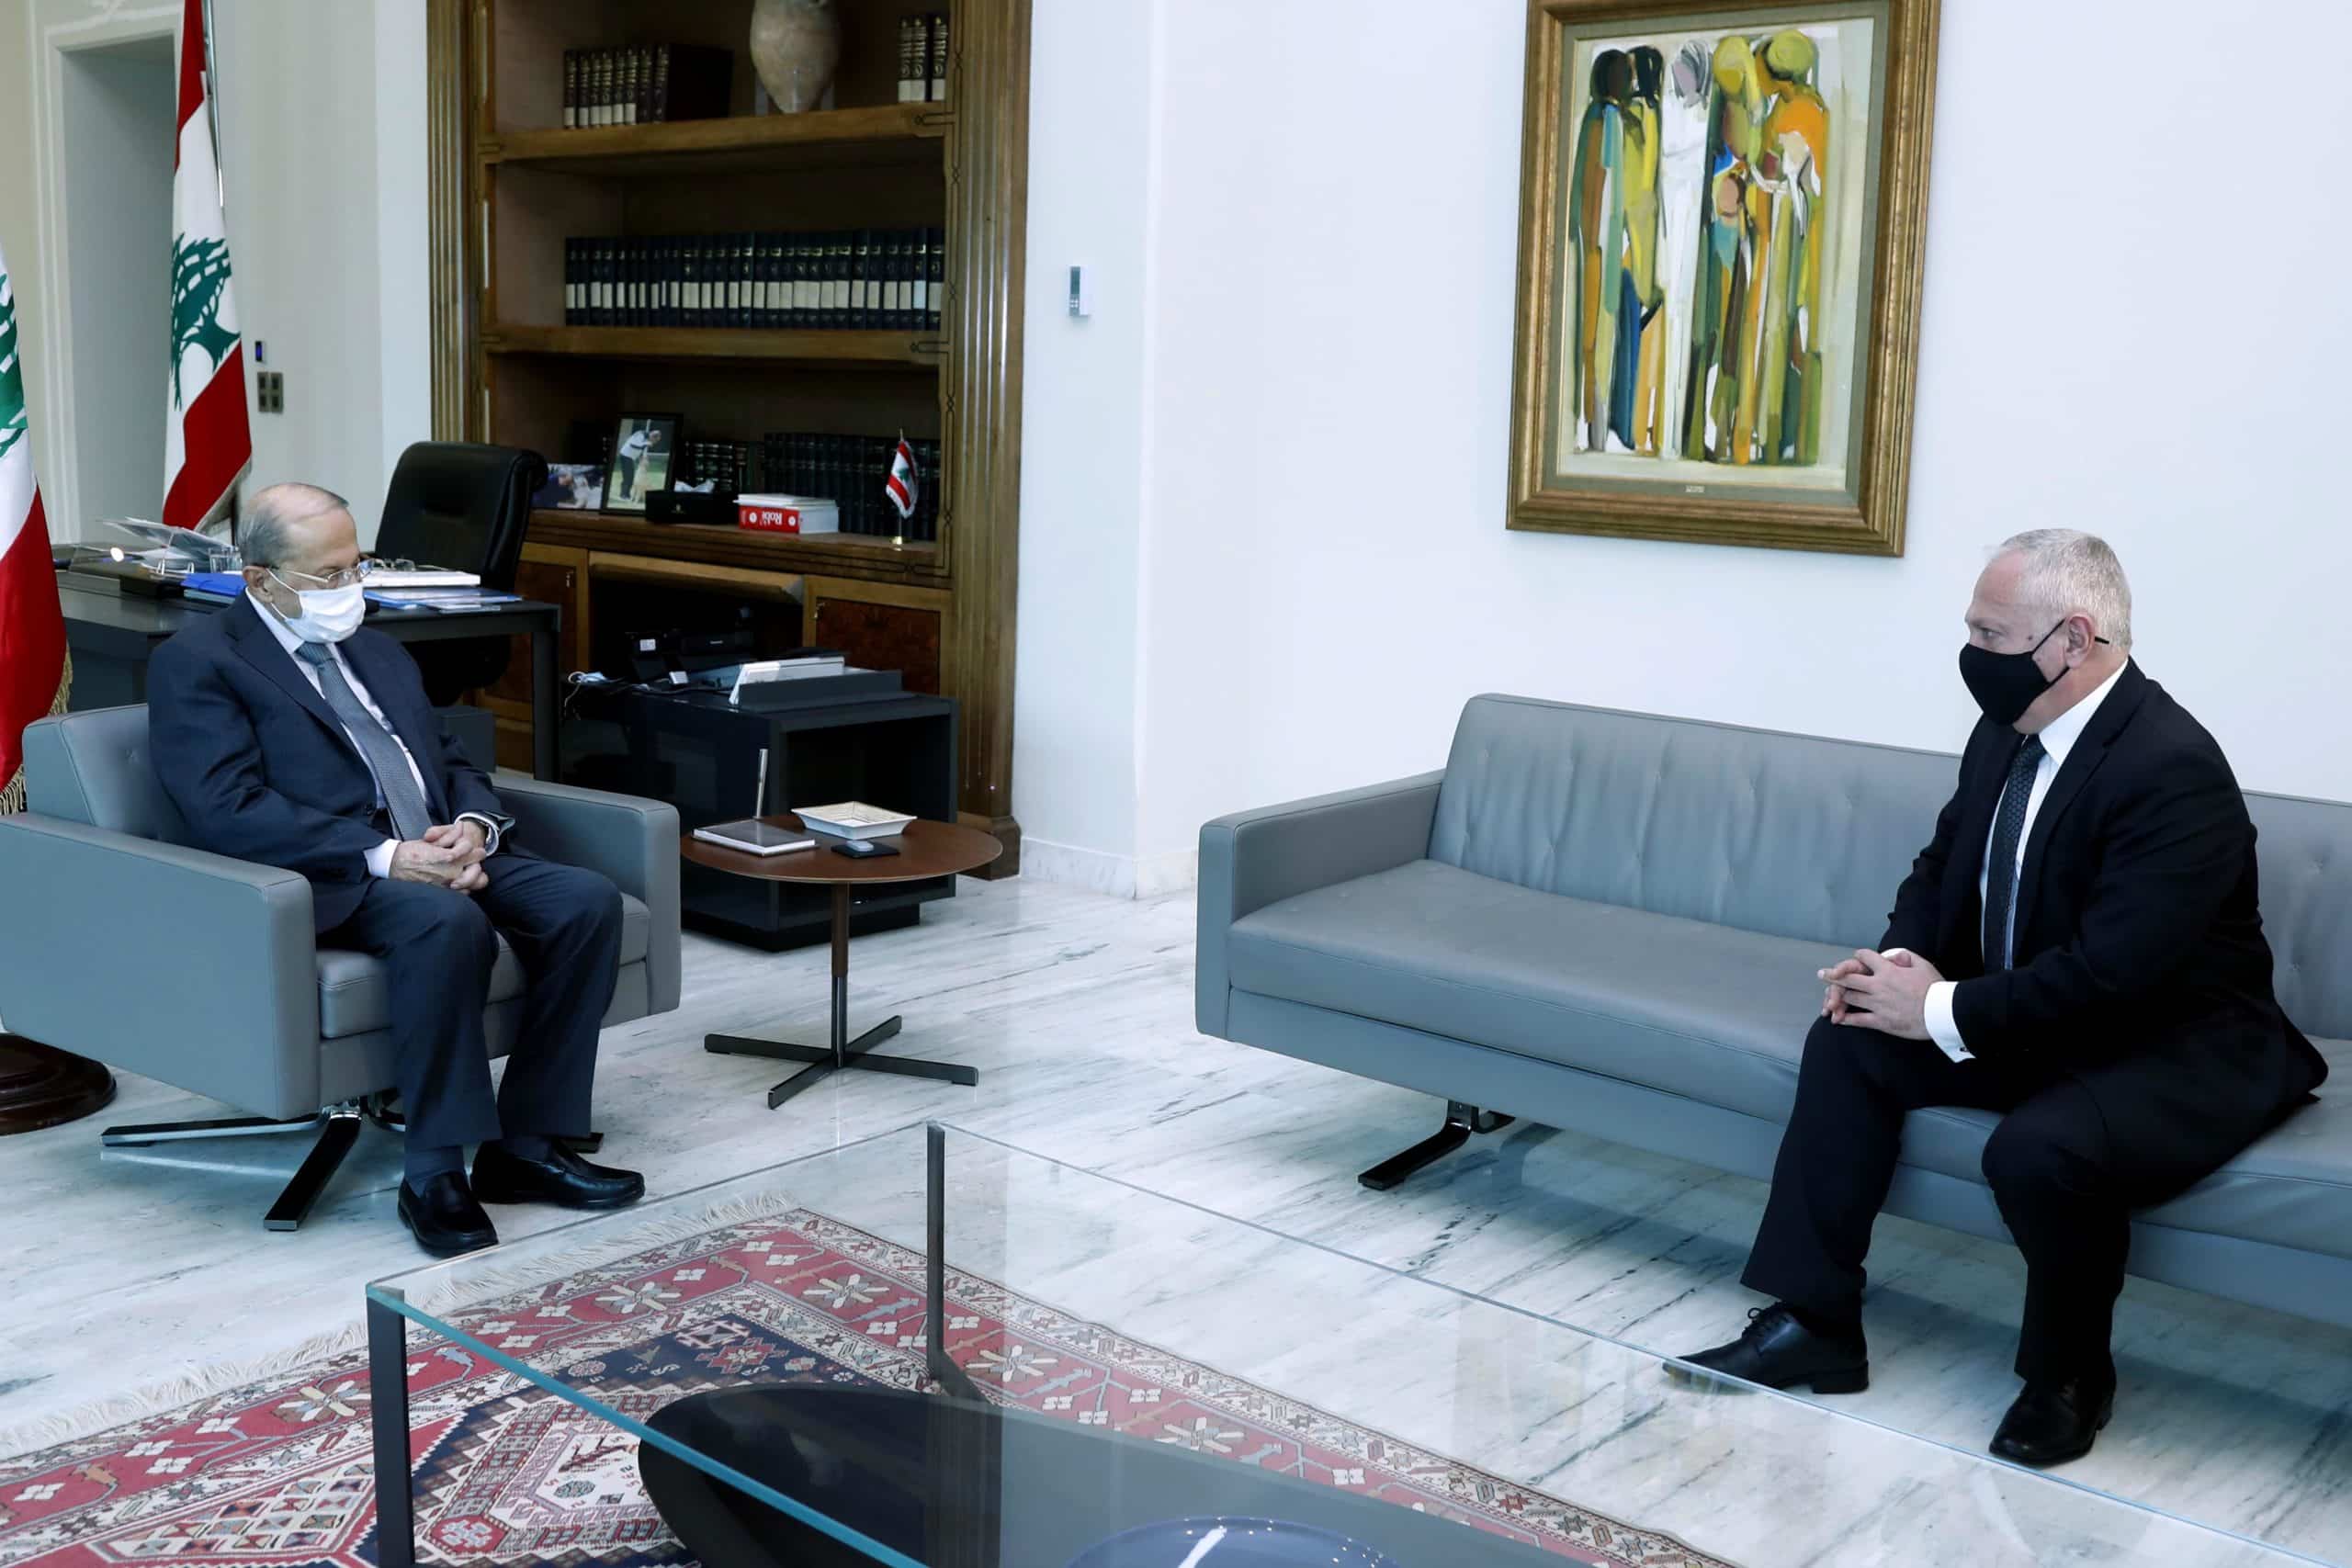 La réunion entre le président de la république et l'ambassadeur d'arménie au Liban. Crédit Photo: Dalati & Nohra